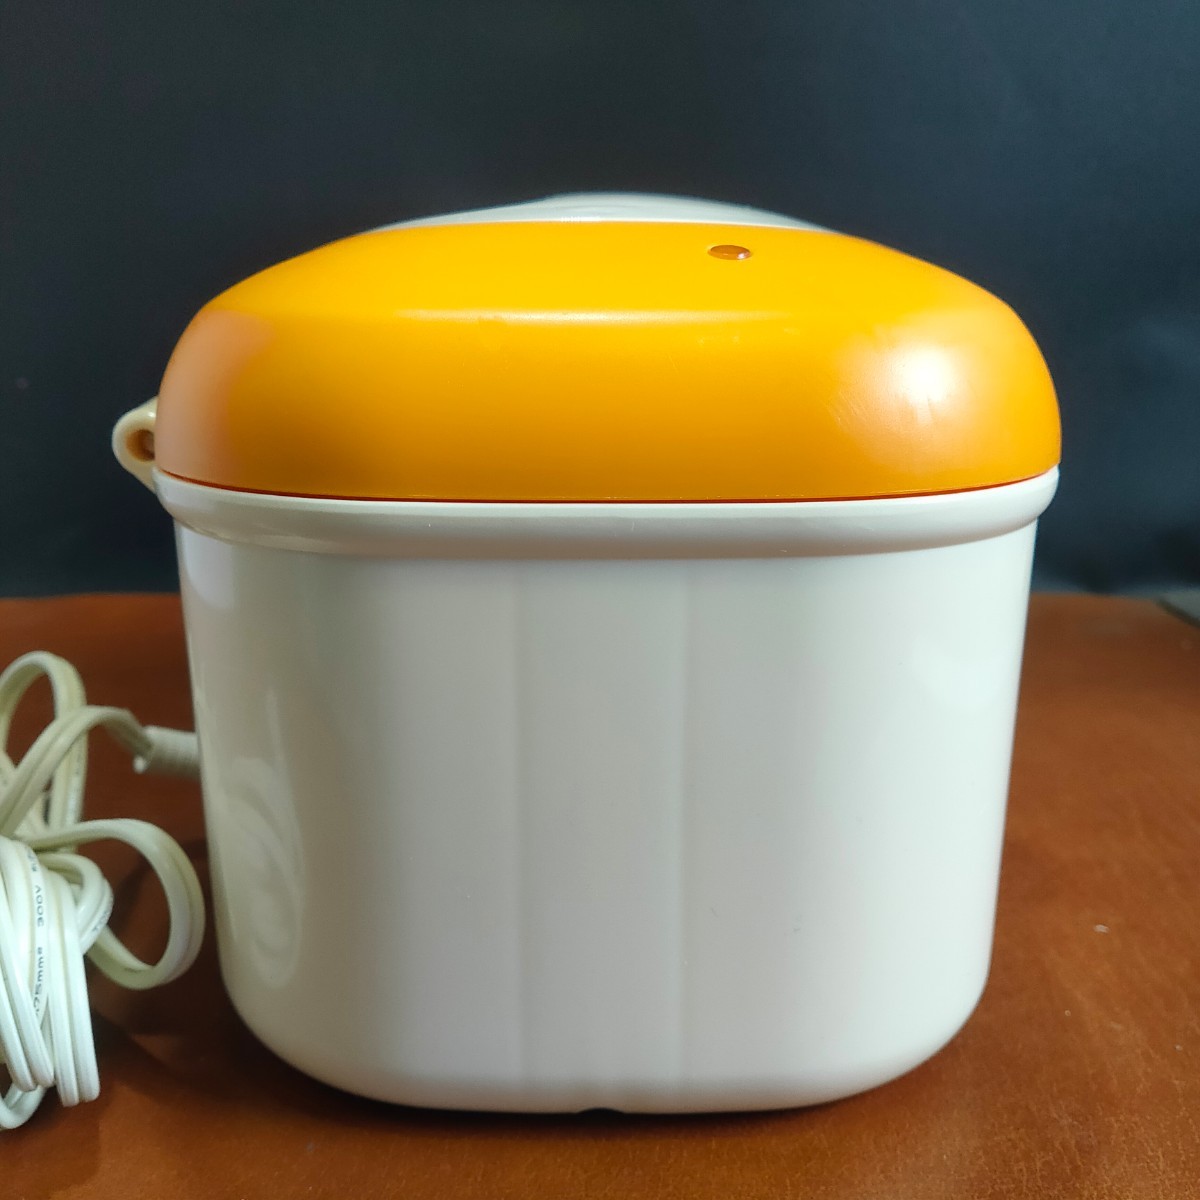 [ б/у товар ]Combi комбинированный Quick утеплитель HU влажные салфетки .. поэтому контейнер свежий orange товары для малышей [ труба A758-2402]